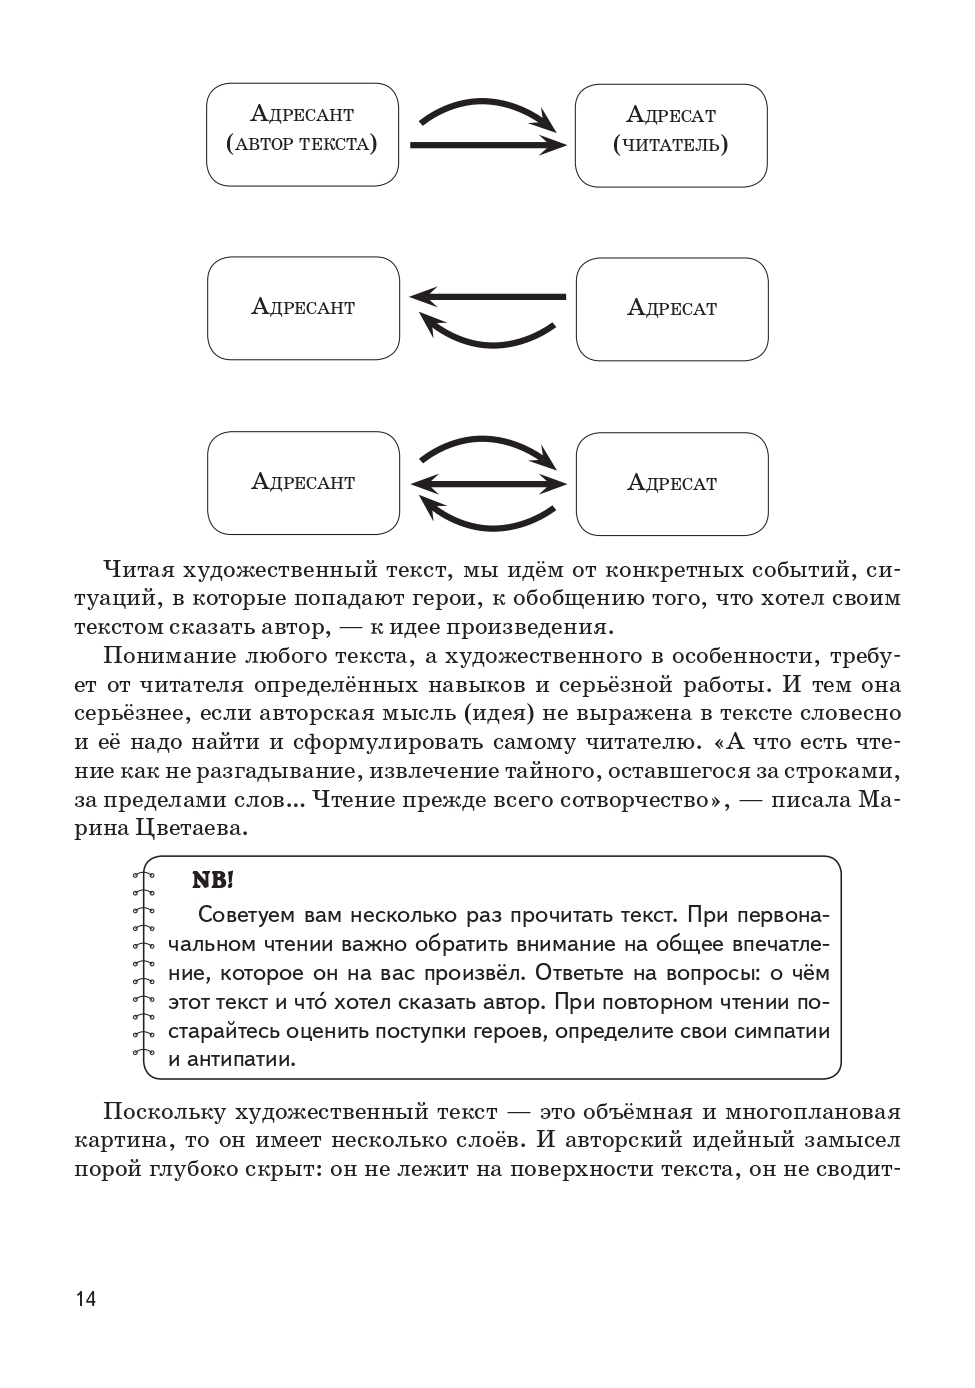 Русский язык. 9-й класс. Учимся писать сочинение: задание 9.3